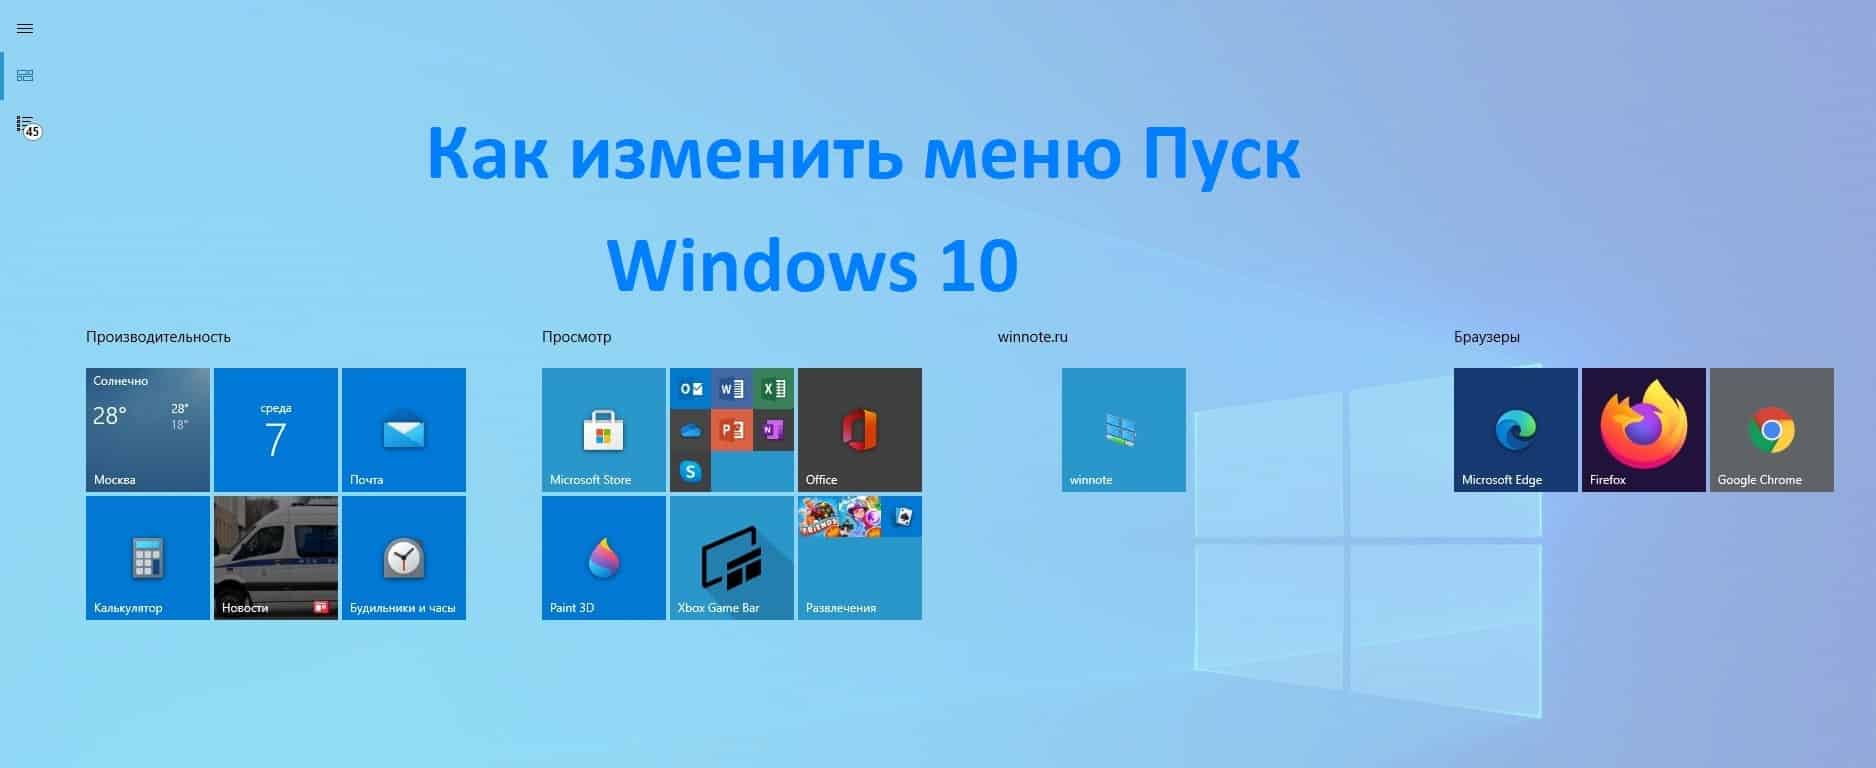 Как сделать windows 11 похожей на windows 10